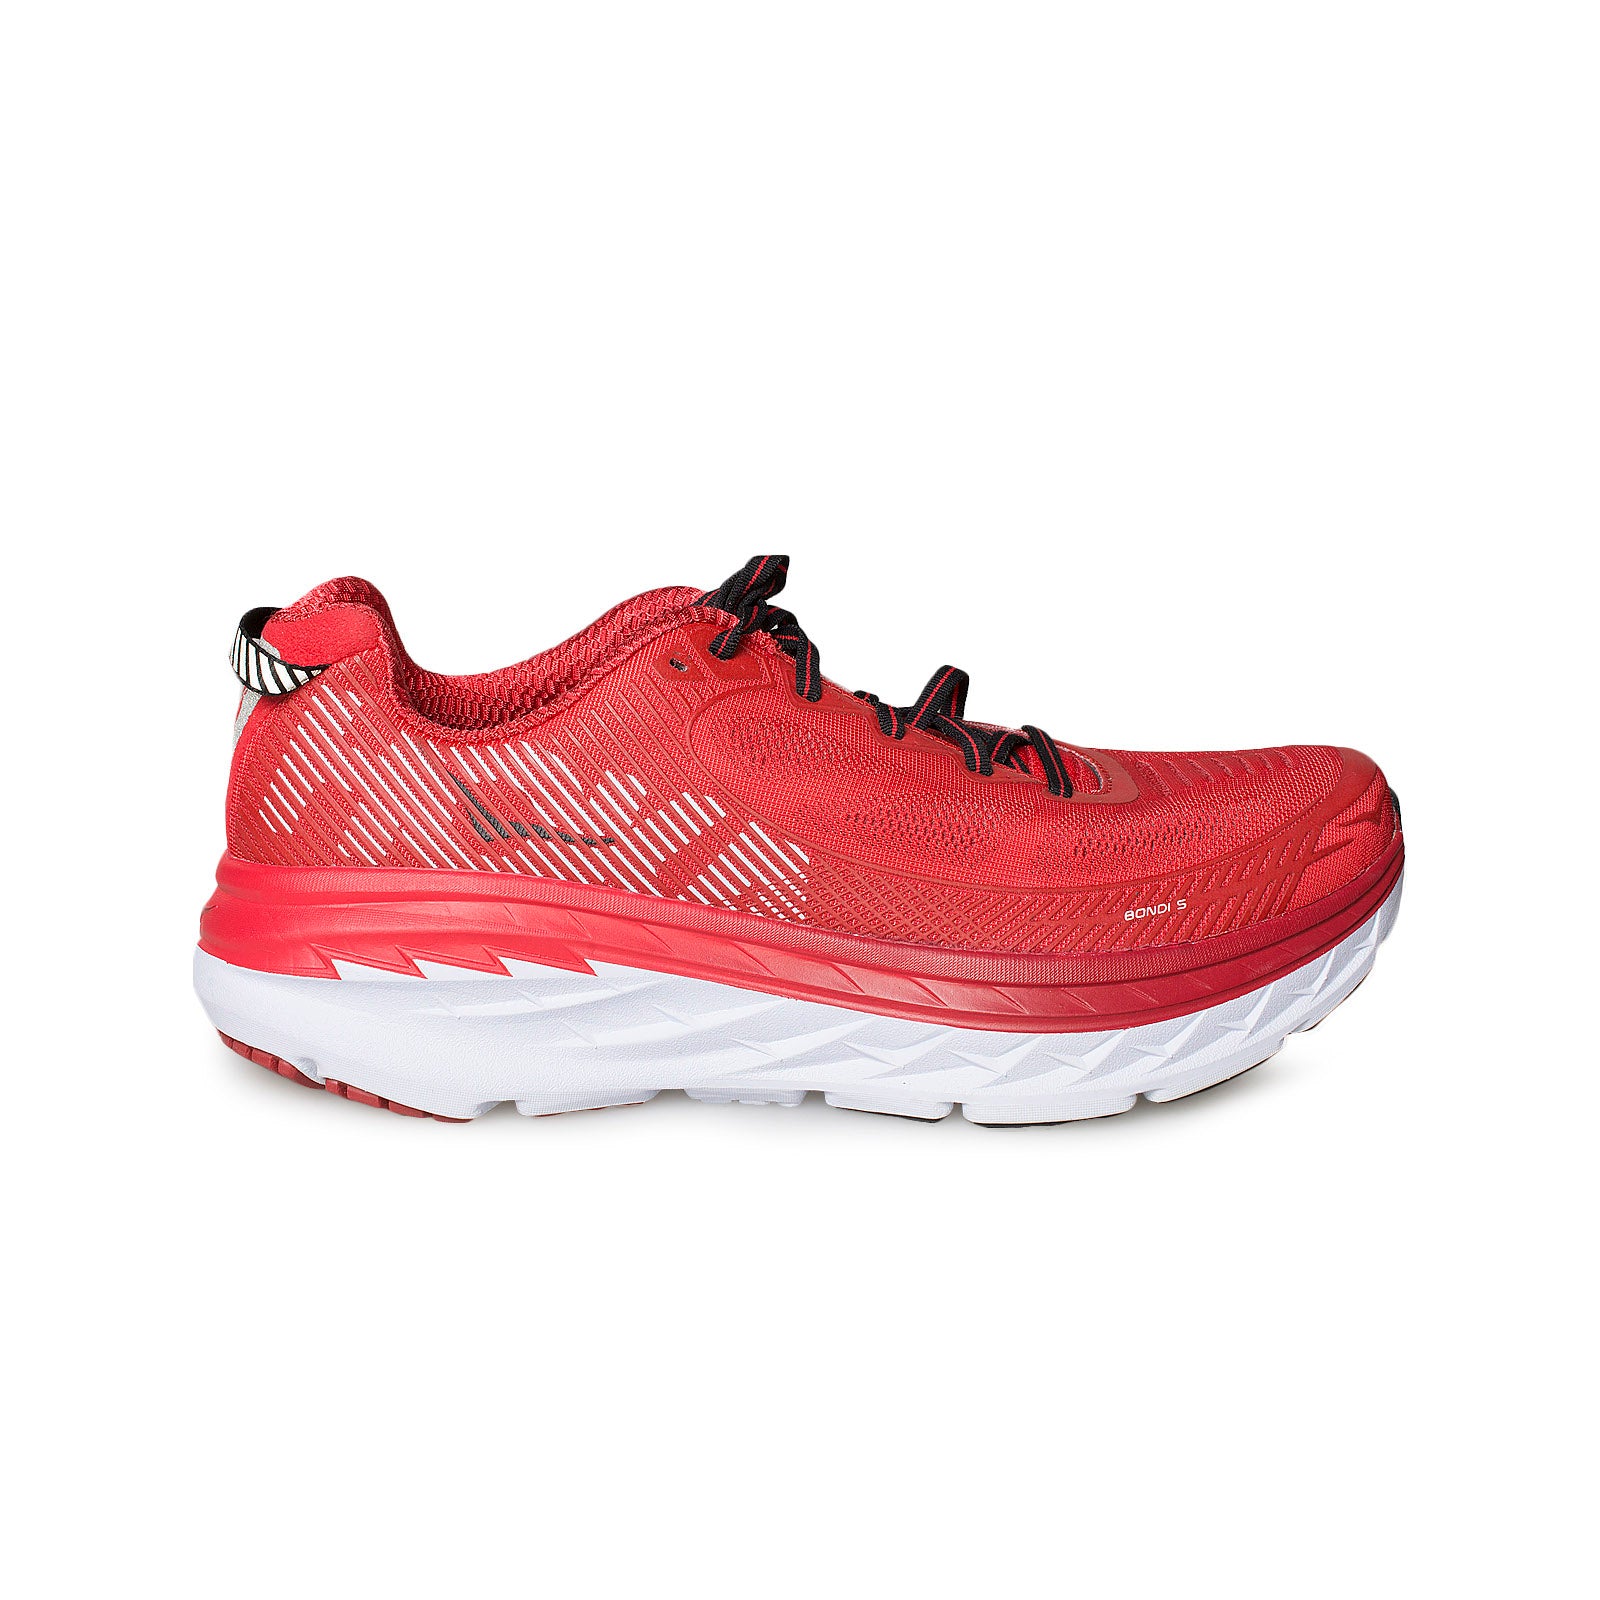 Hoka One One Bondi 5 High Risk Red / Haute Red Running Shoes 